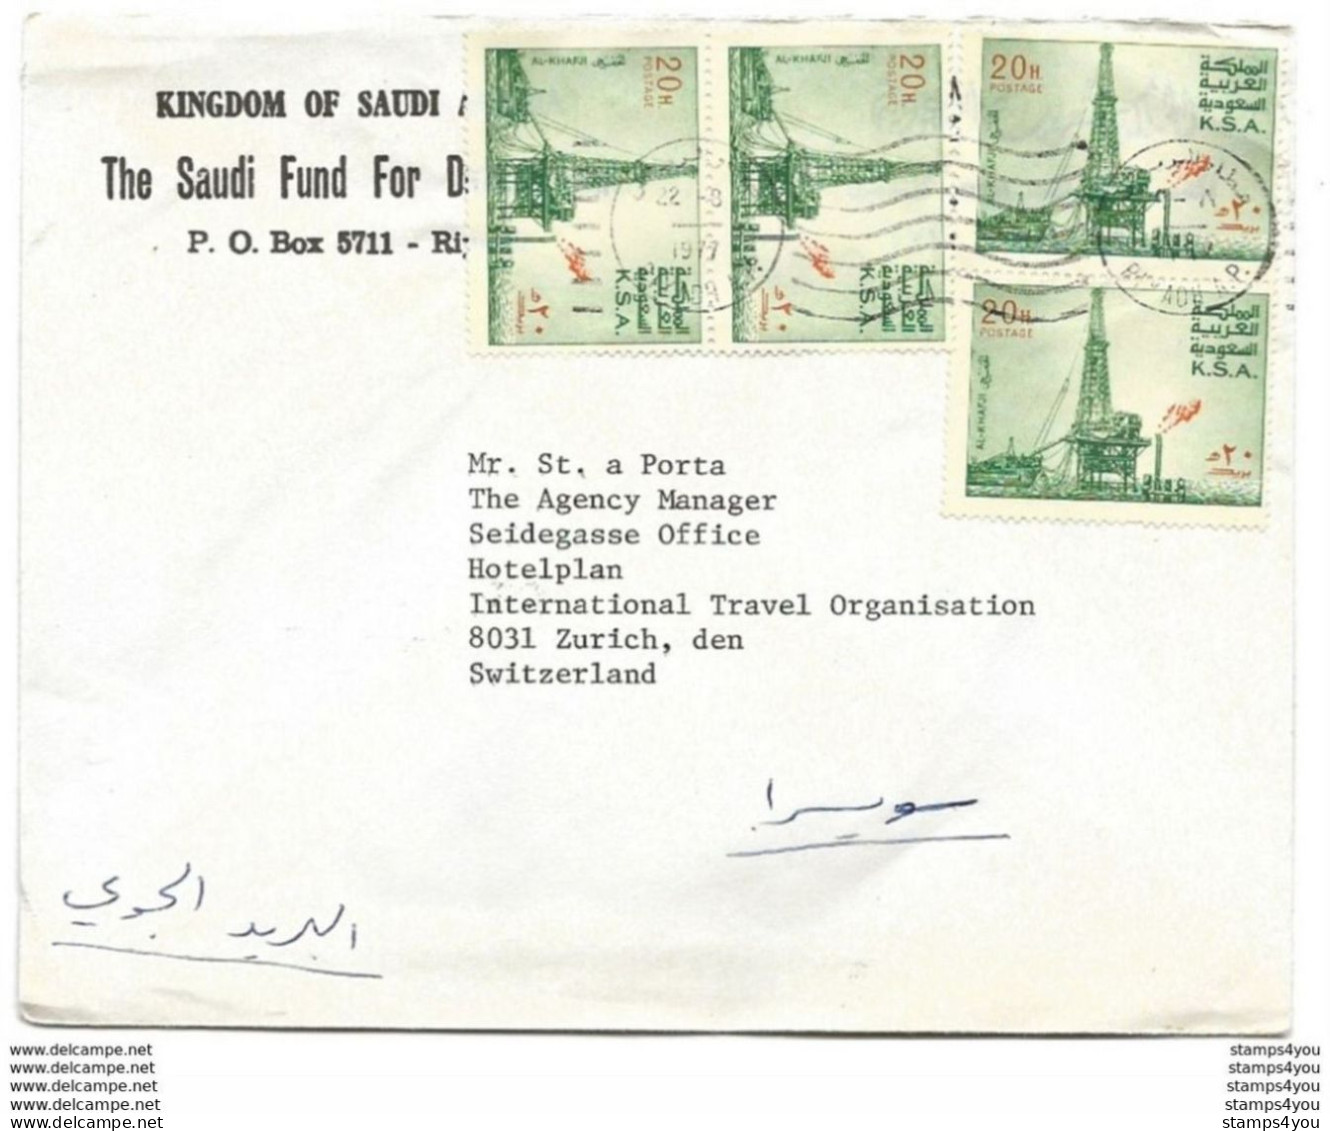 239 - 27 - Enveloppe Envoyée De Riyadh En Suisse - Arabia Saudita